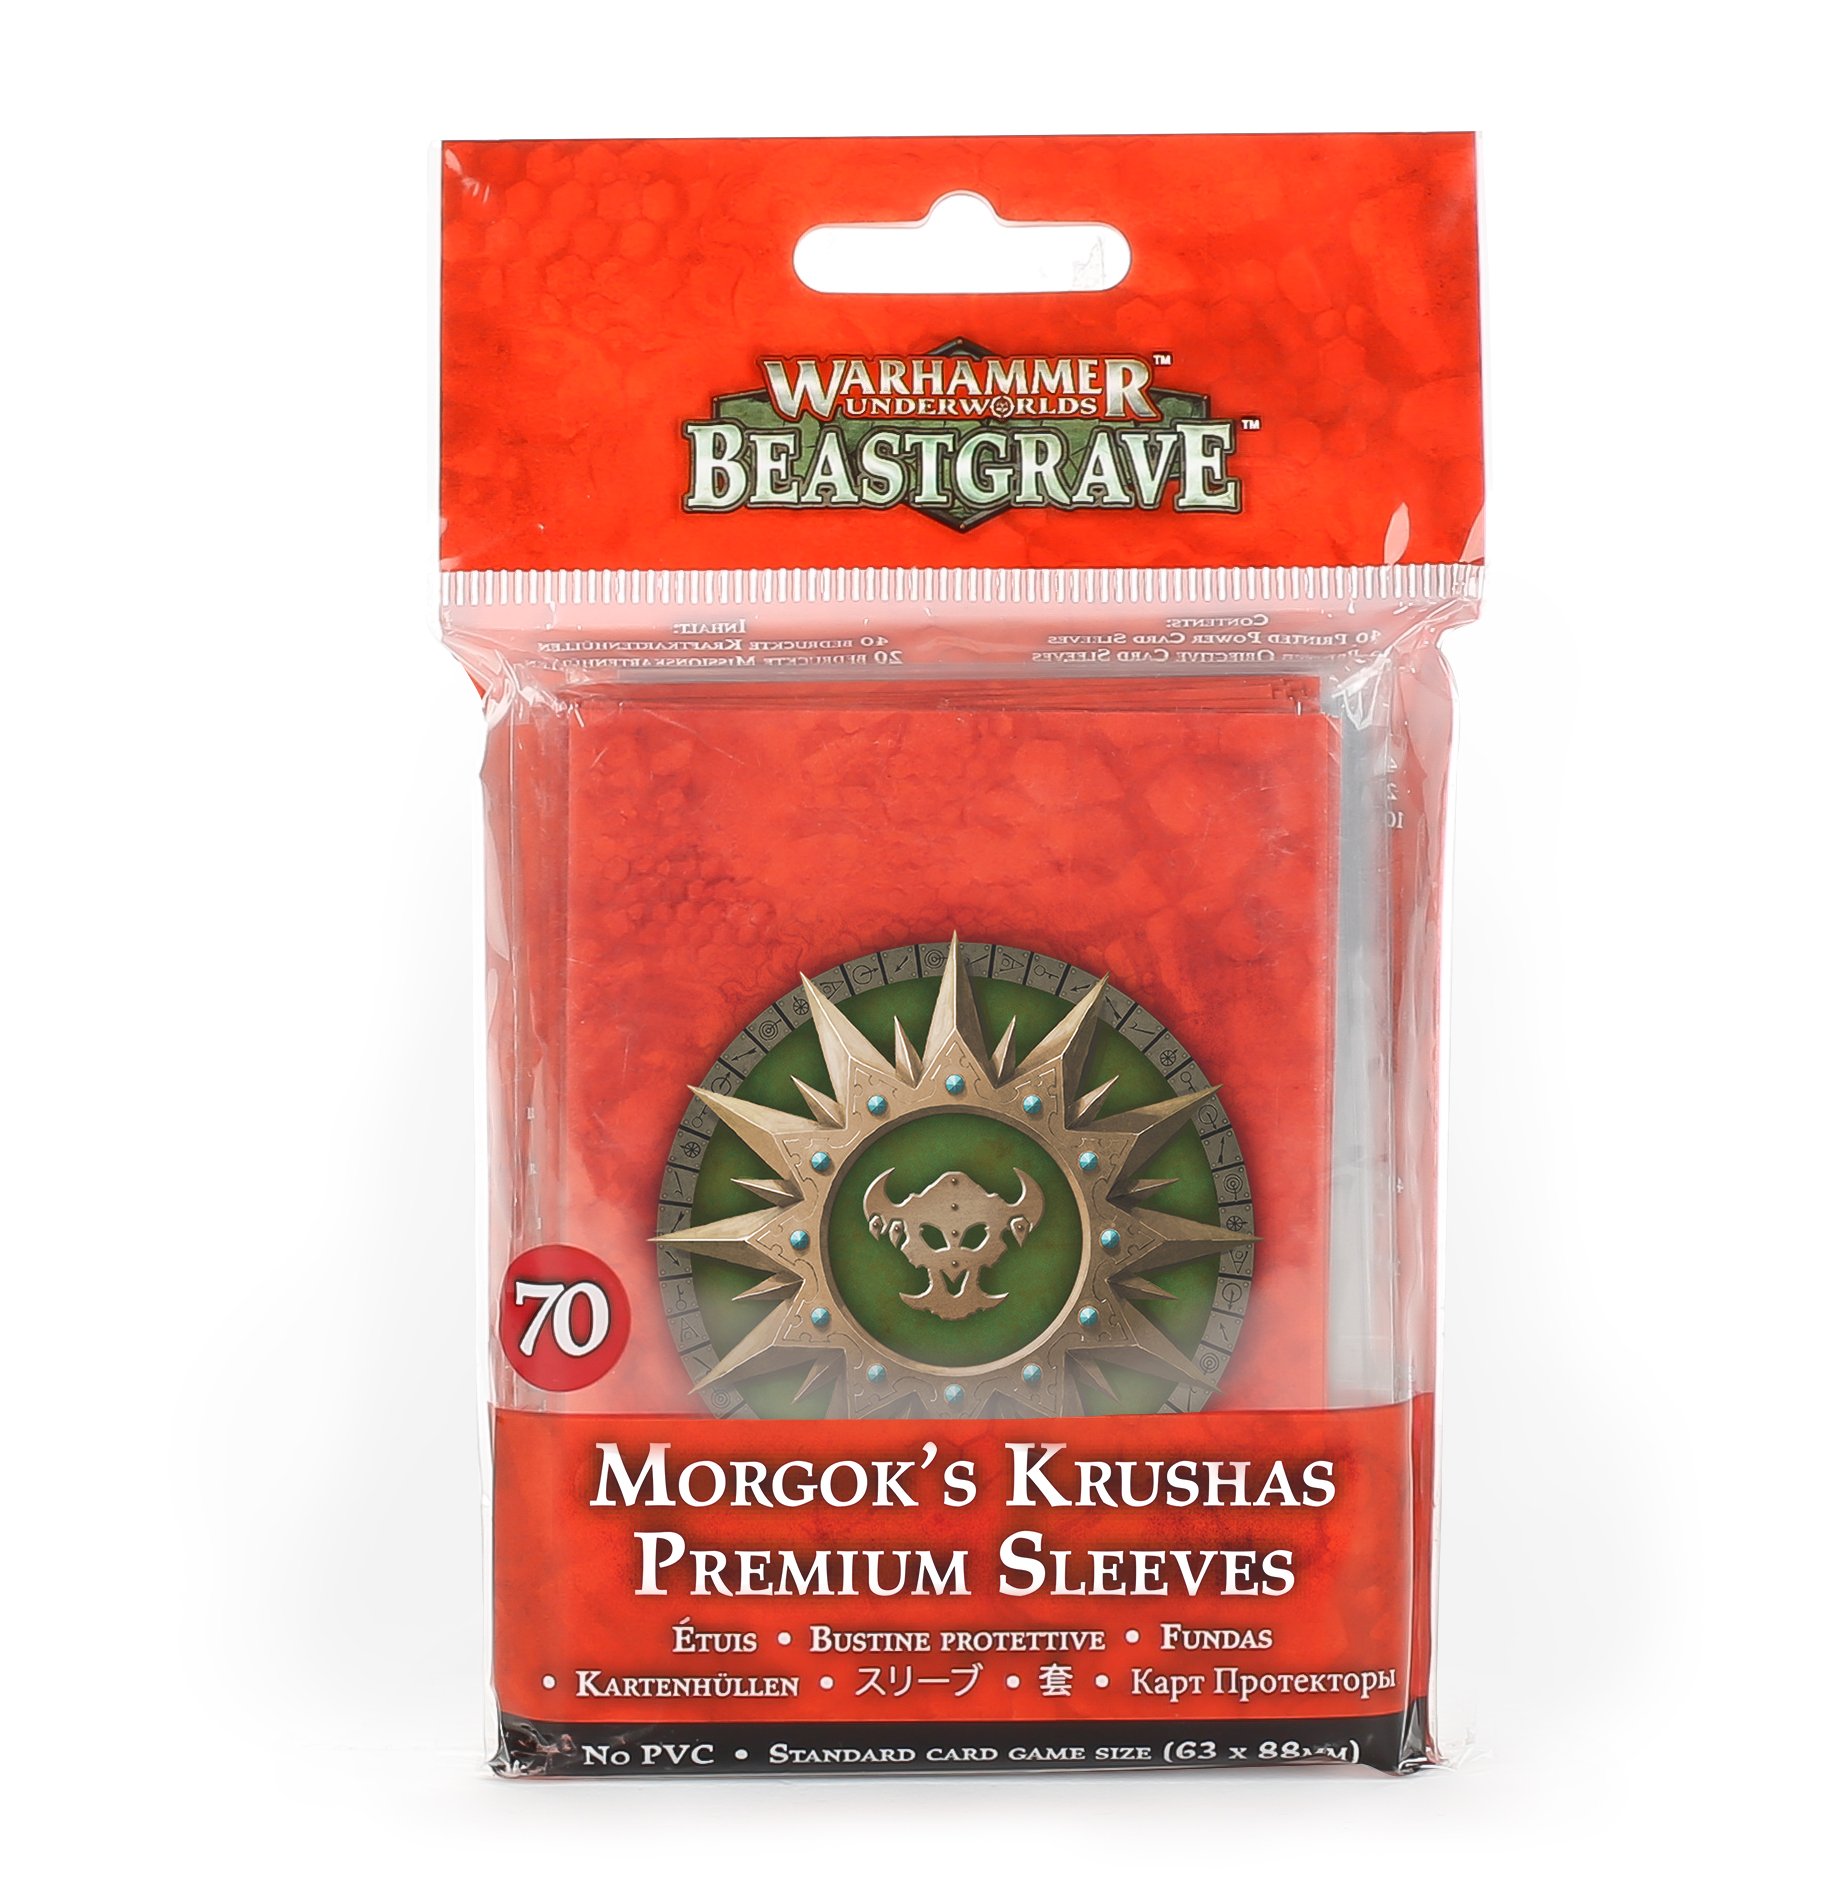 Warhammer Underworlds: Beastgrave: Morgoks Krushas Premium Sleeves 